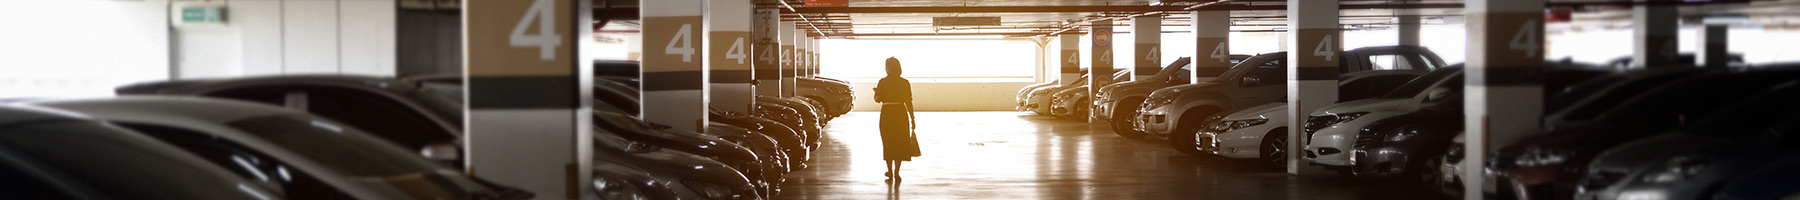 Woman walking alone in a parking garage